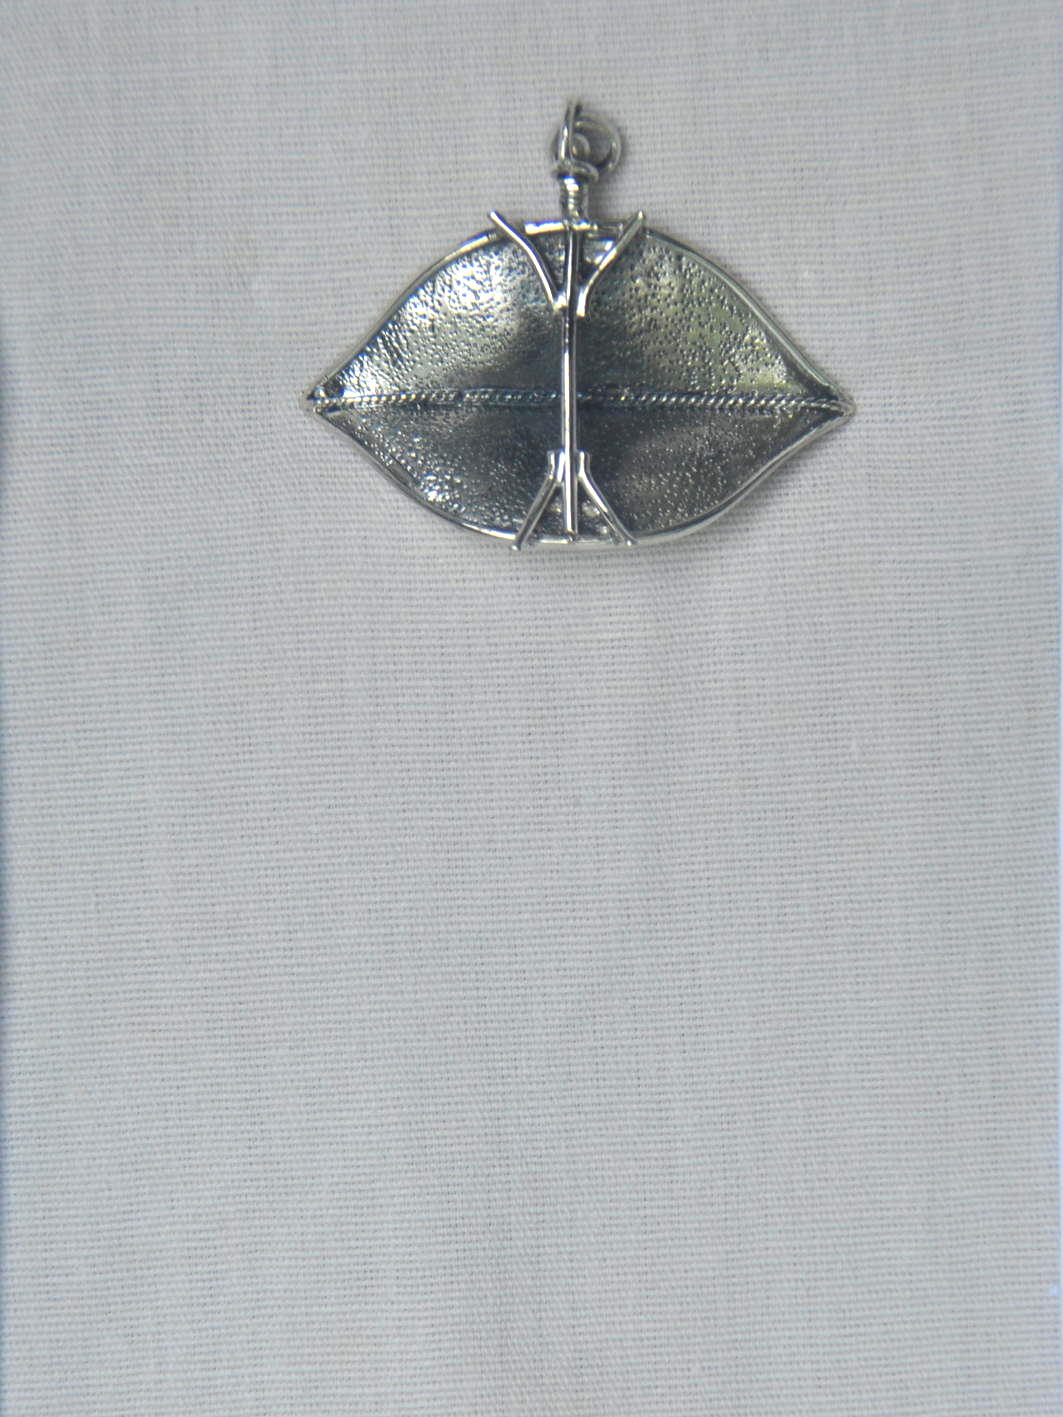 Silver Pecukan Pendant